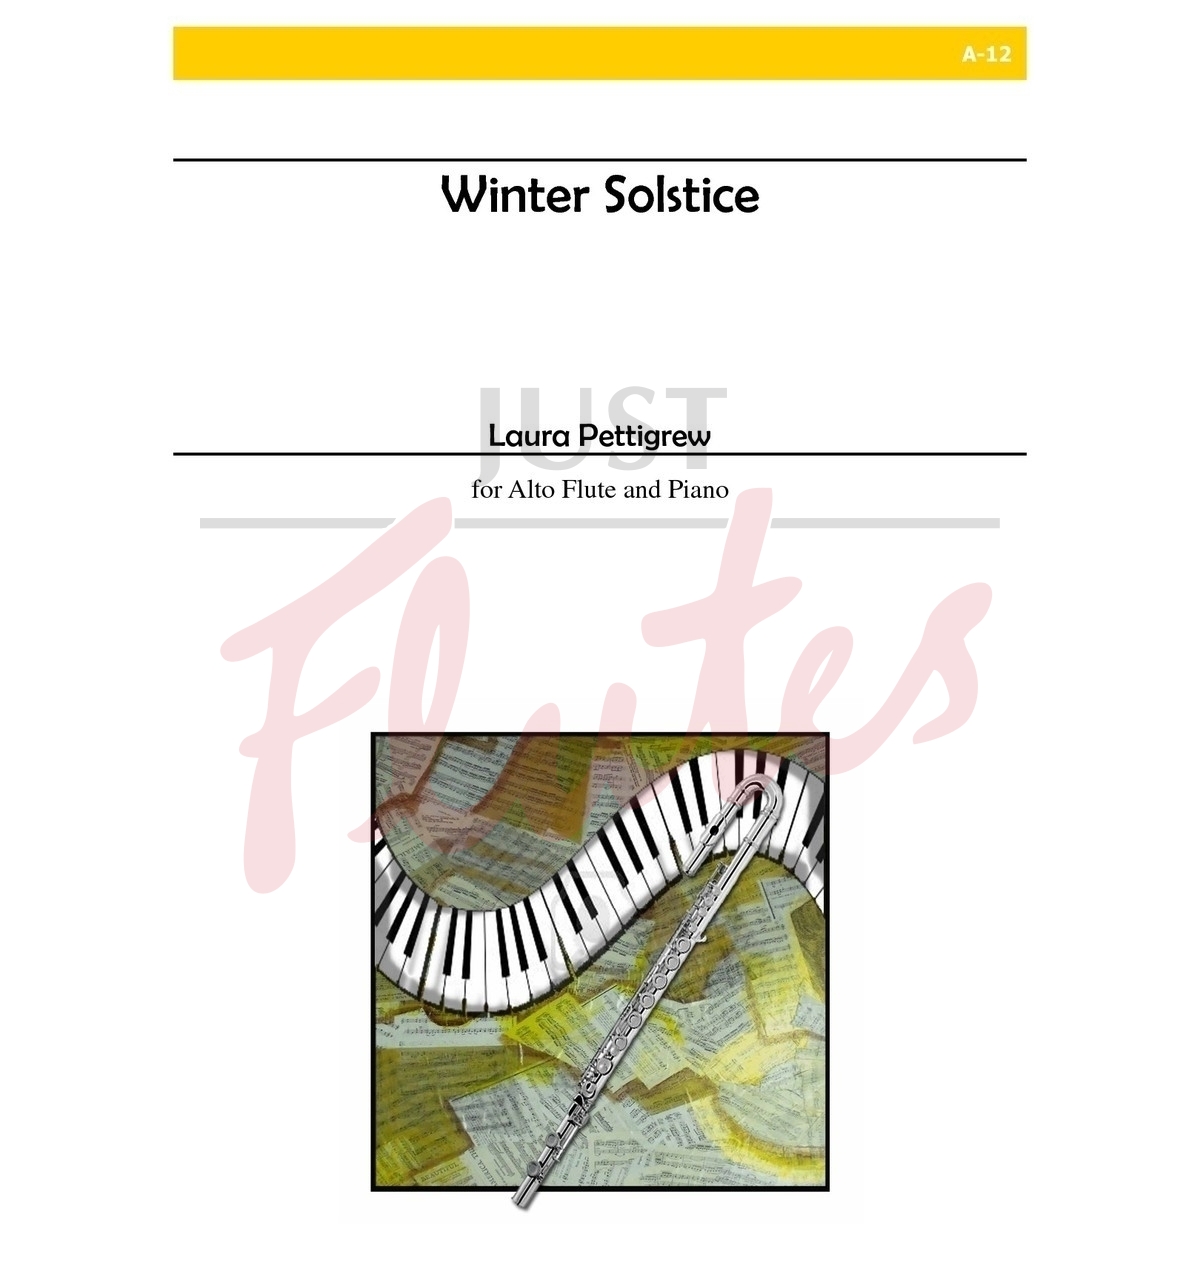 Winter Solstice for Alto Flute and Piano